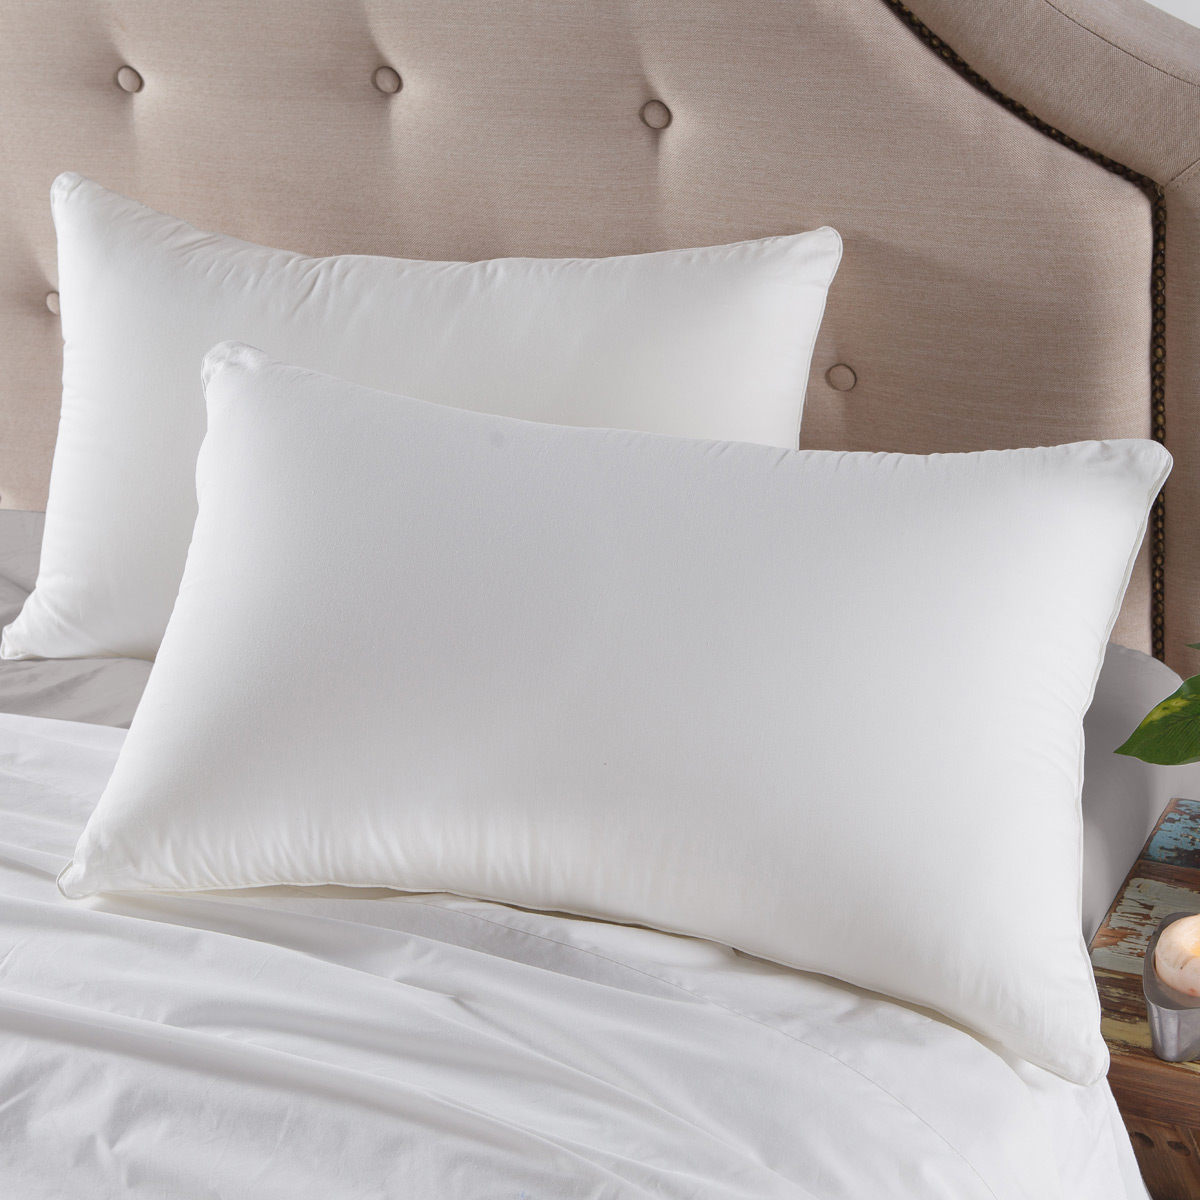 五星级酒店枕头 高回弹性超细纤维枕 品质助睡眠 48*74枕芯一个